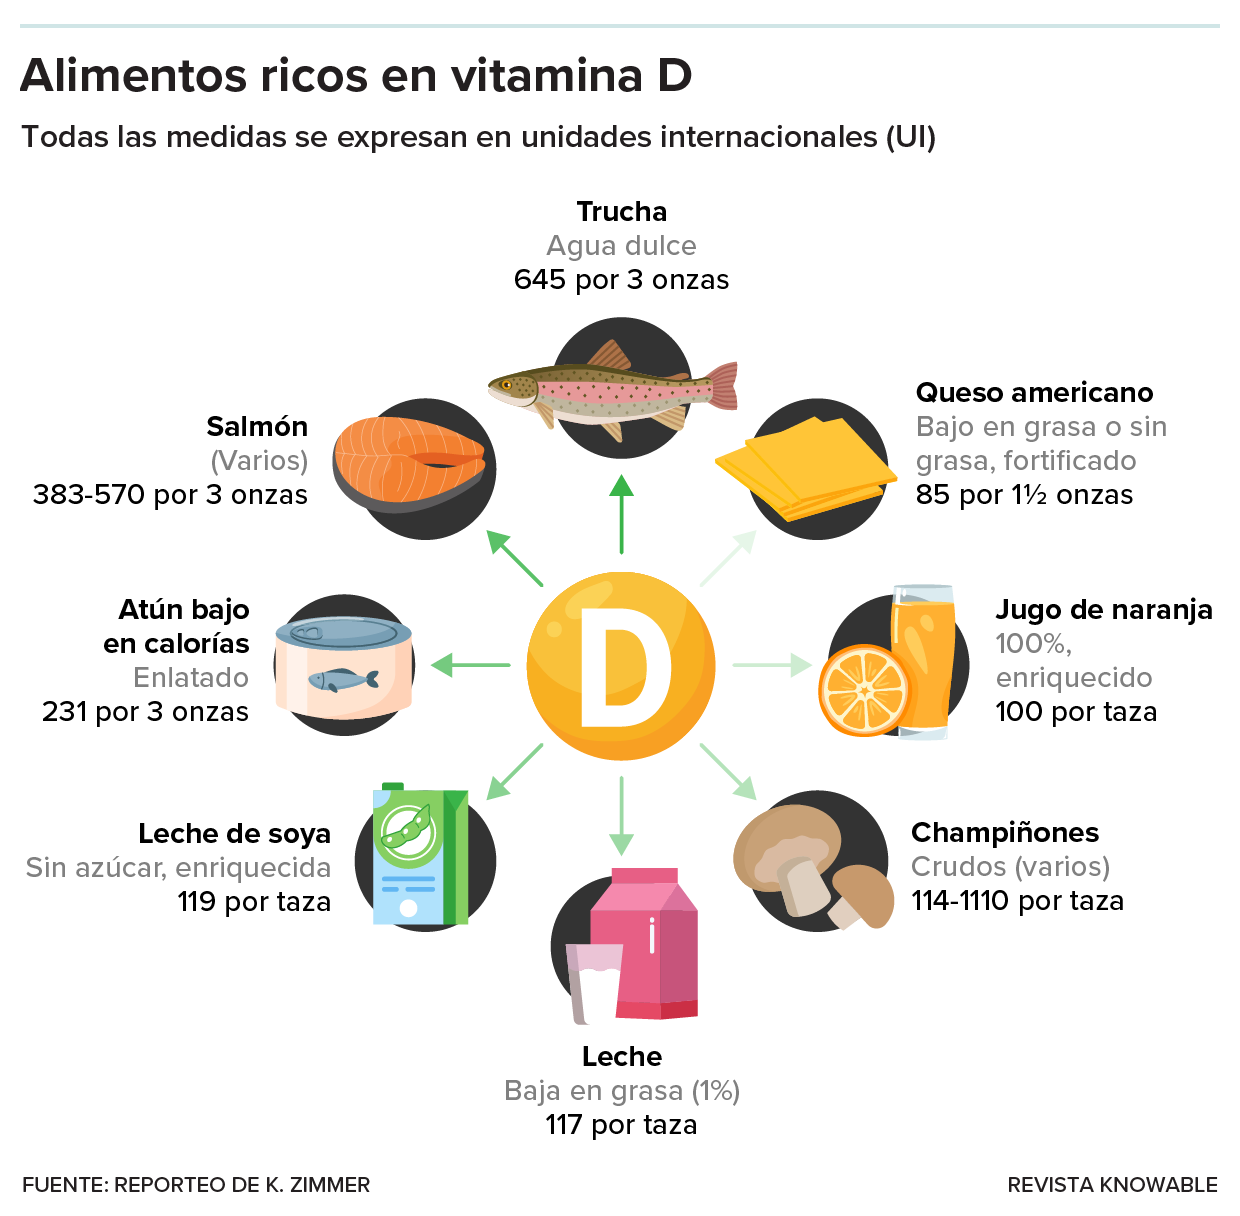 El gráfico muestra algunos alimentos ricos en vitamina D.